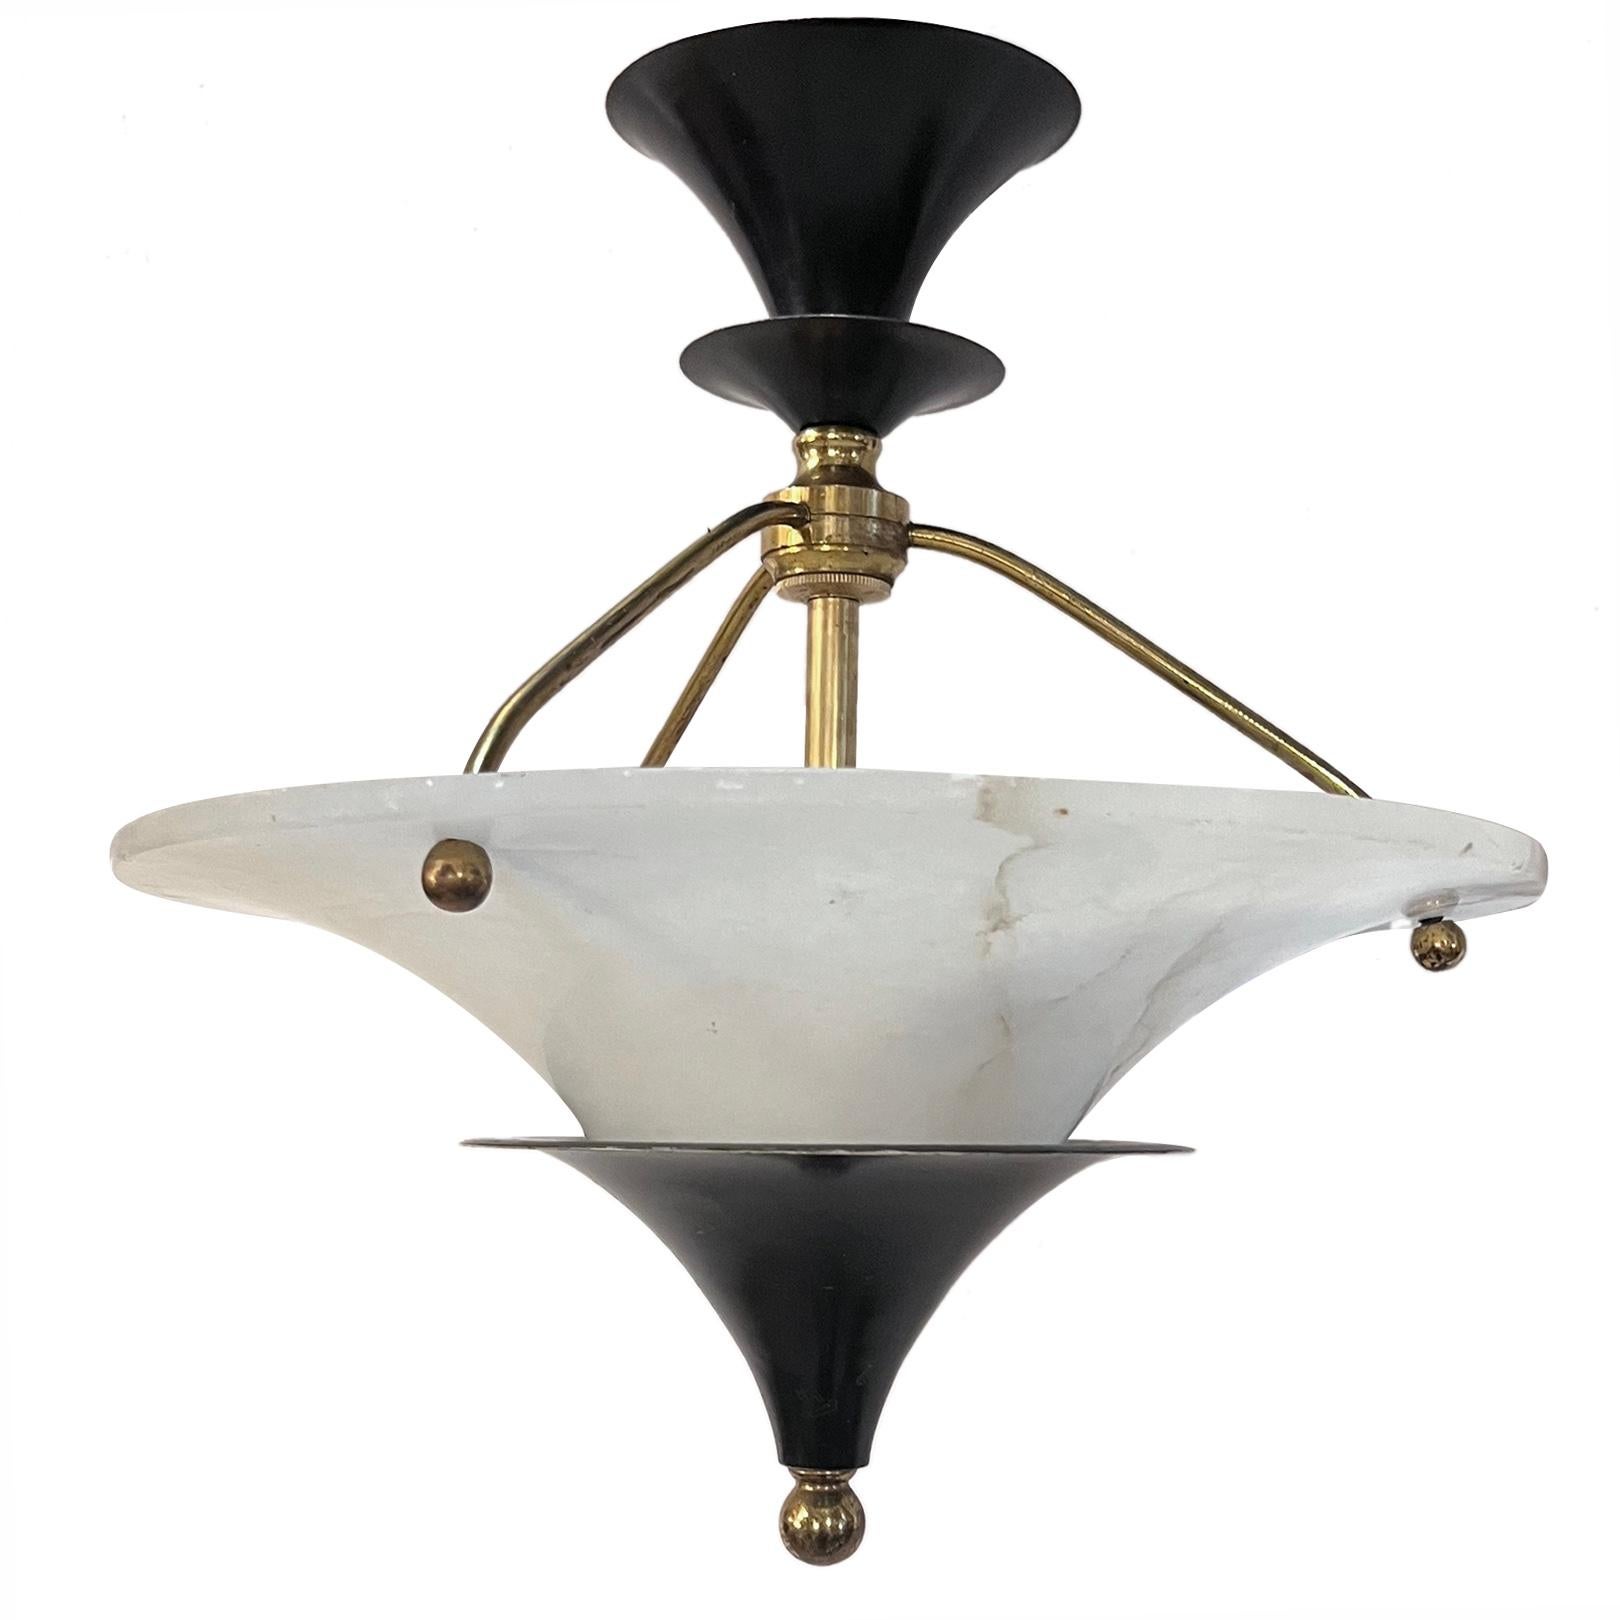 Lampe suspendue en albâtre avec corps en métal, datant des années 1930.

Mesures :
Hauteur du présentoir : 20